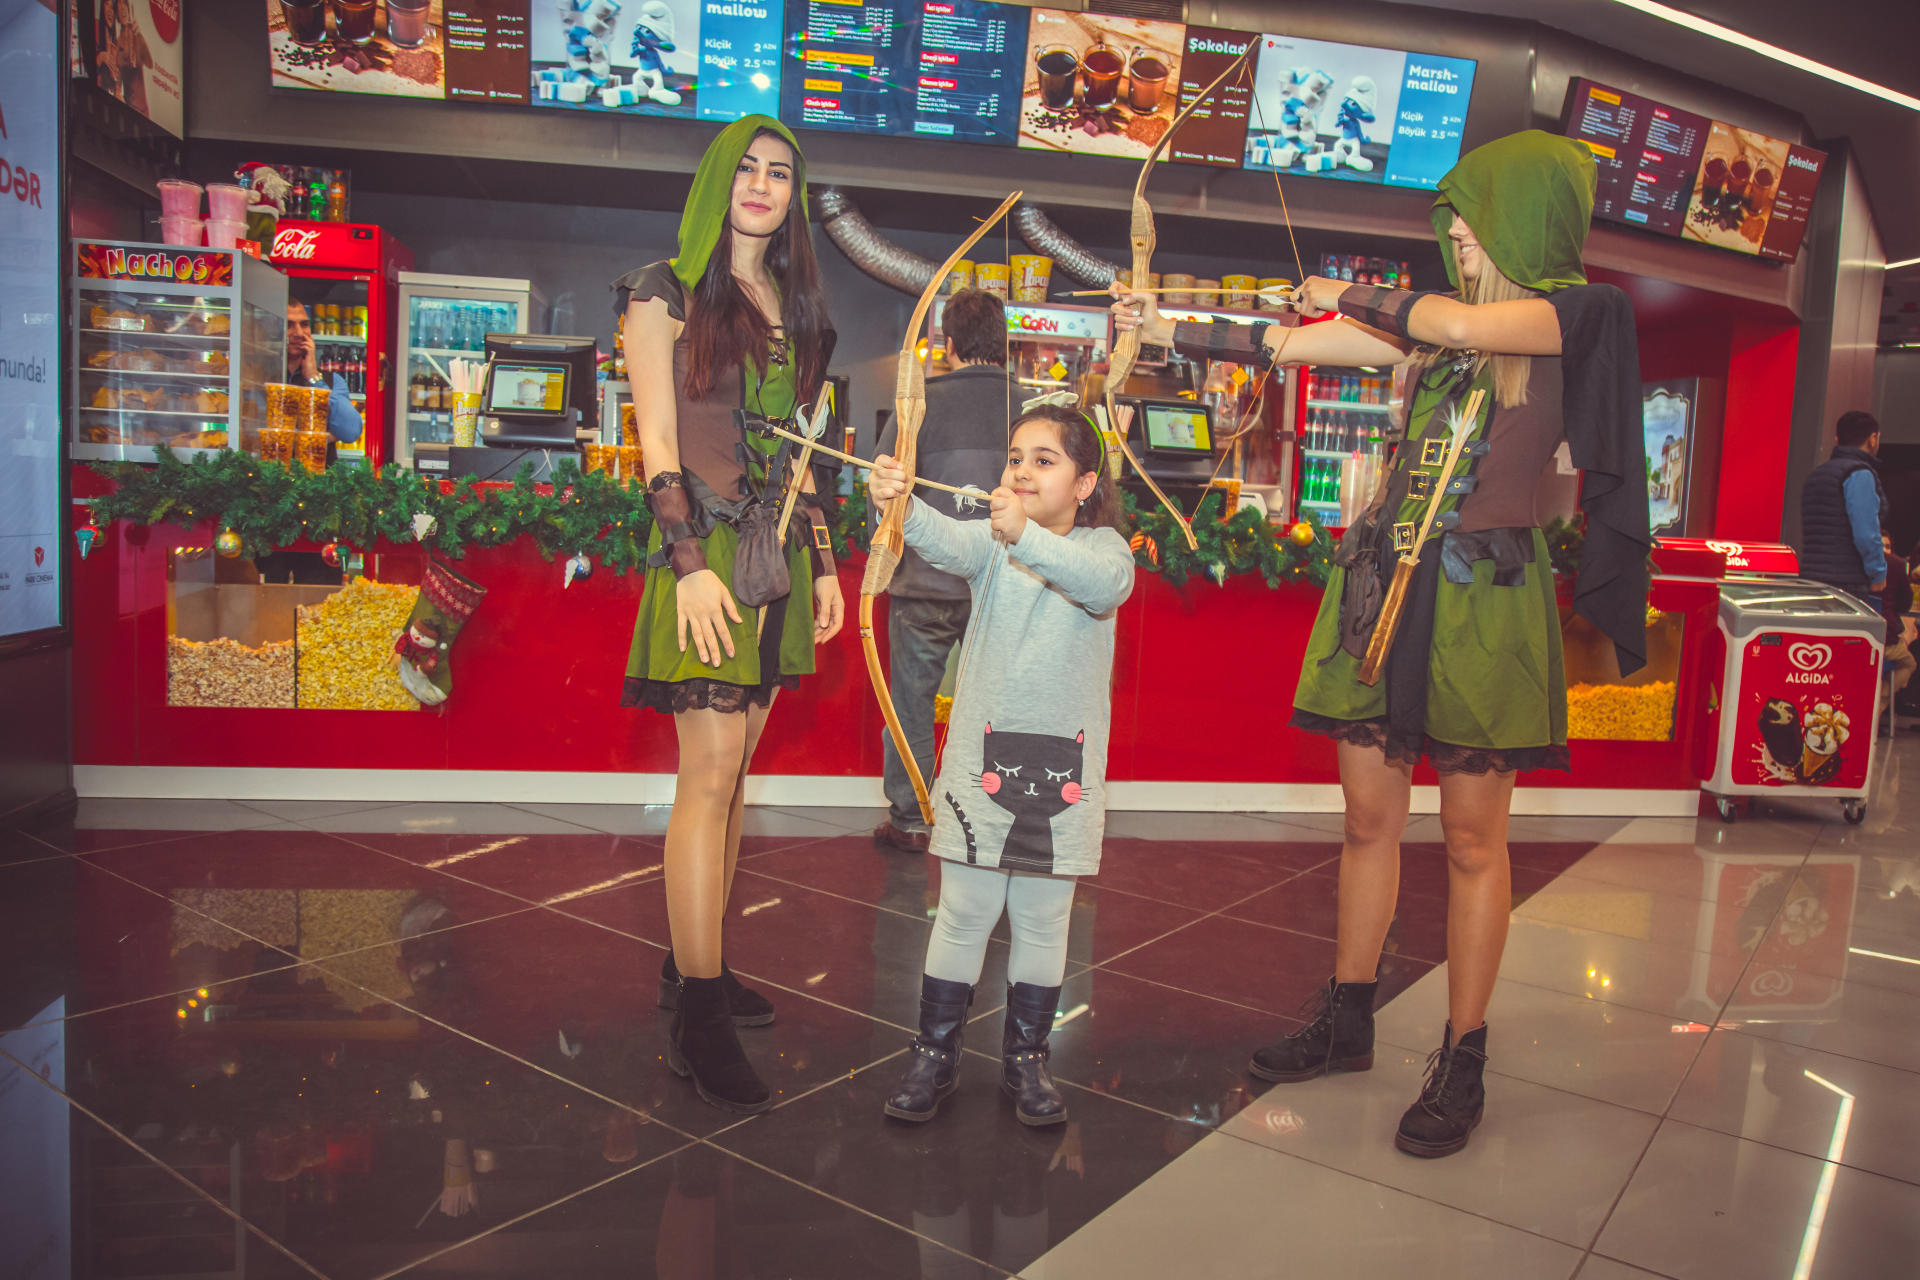 В Баку появились девушки-лучницы из Шервудского леса (ВИДЕО, ФОТО)